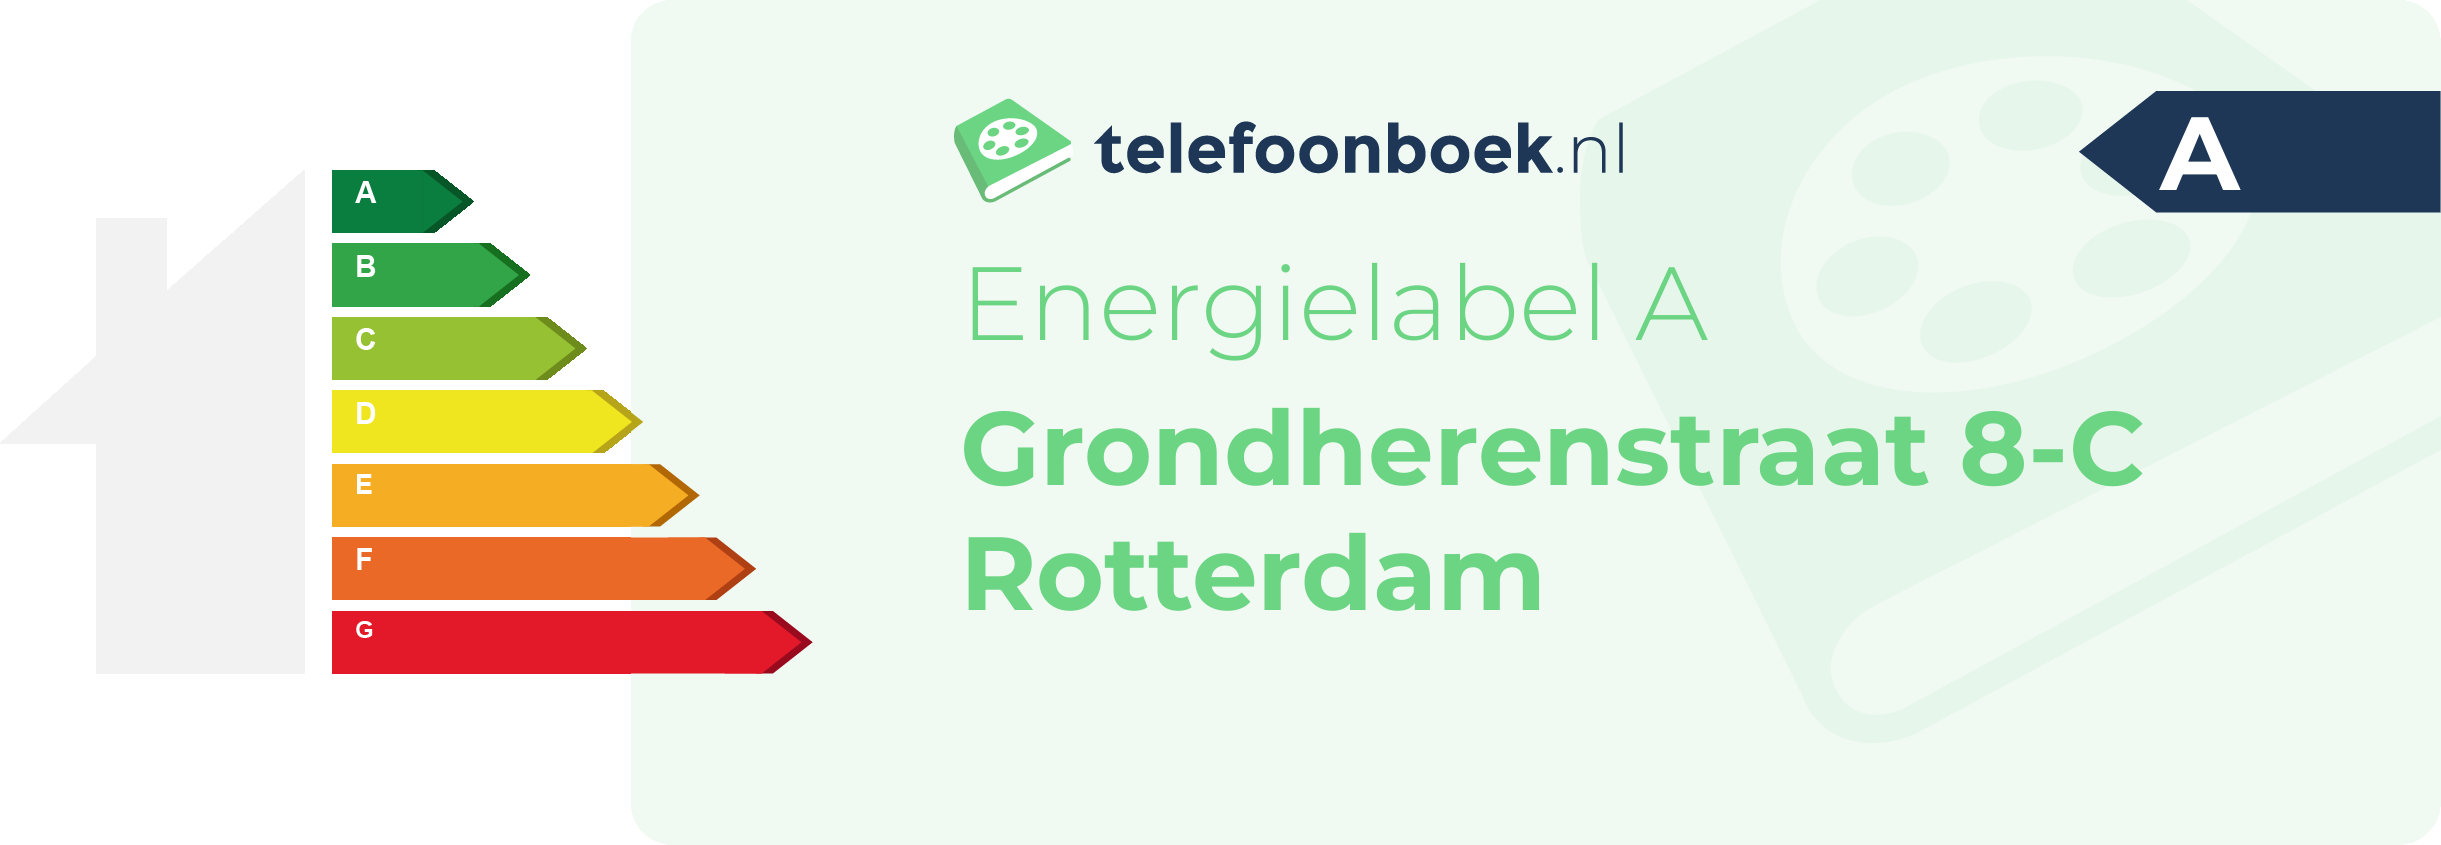 Energielabel Grondherenstraat 8-C Rotterdam